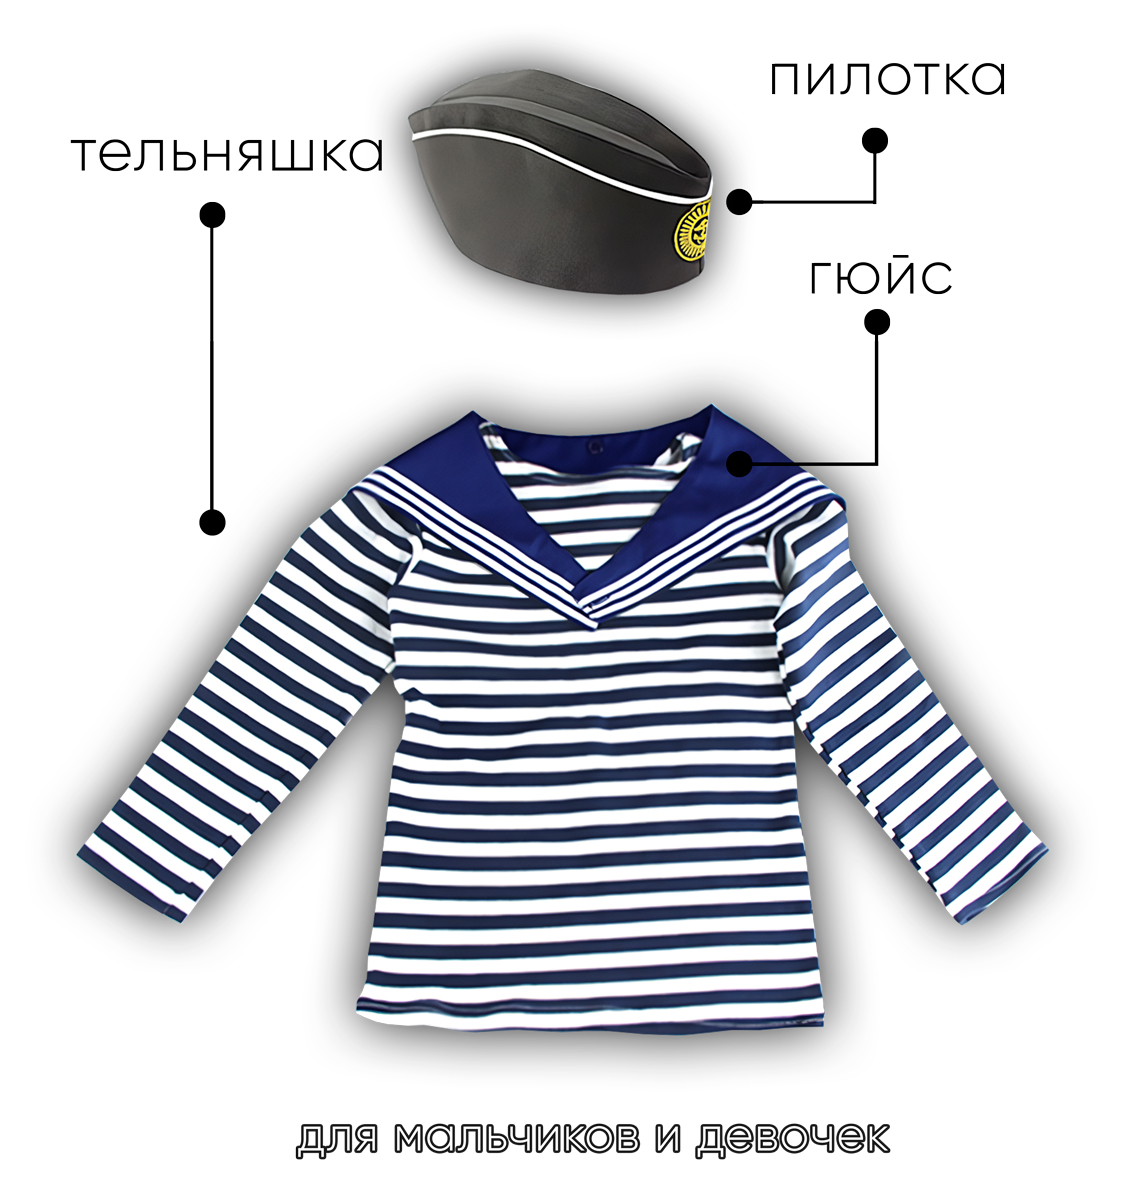 Детский набор матроса для утренника (тельняшка: 28 размер, пилотка детская: 54 размер (на рост 116-122, до 7 лет) и гюйс детский синий)